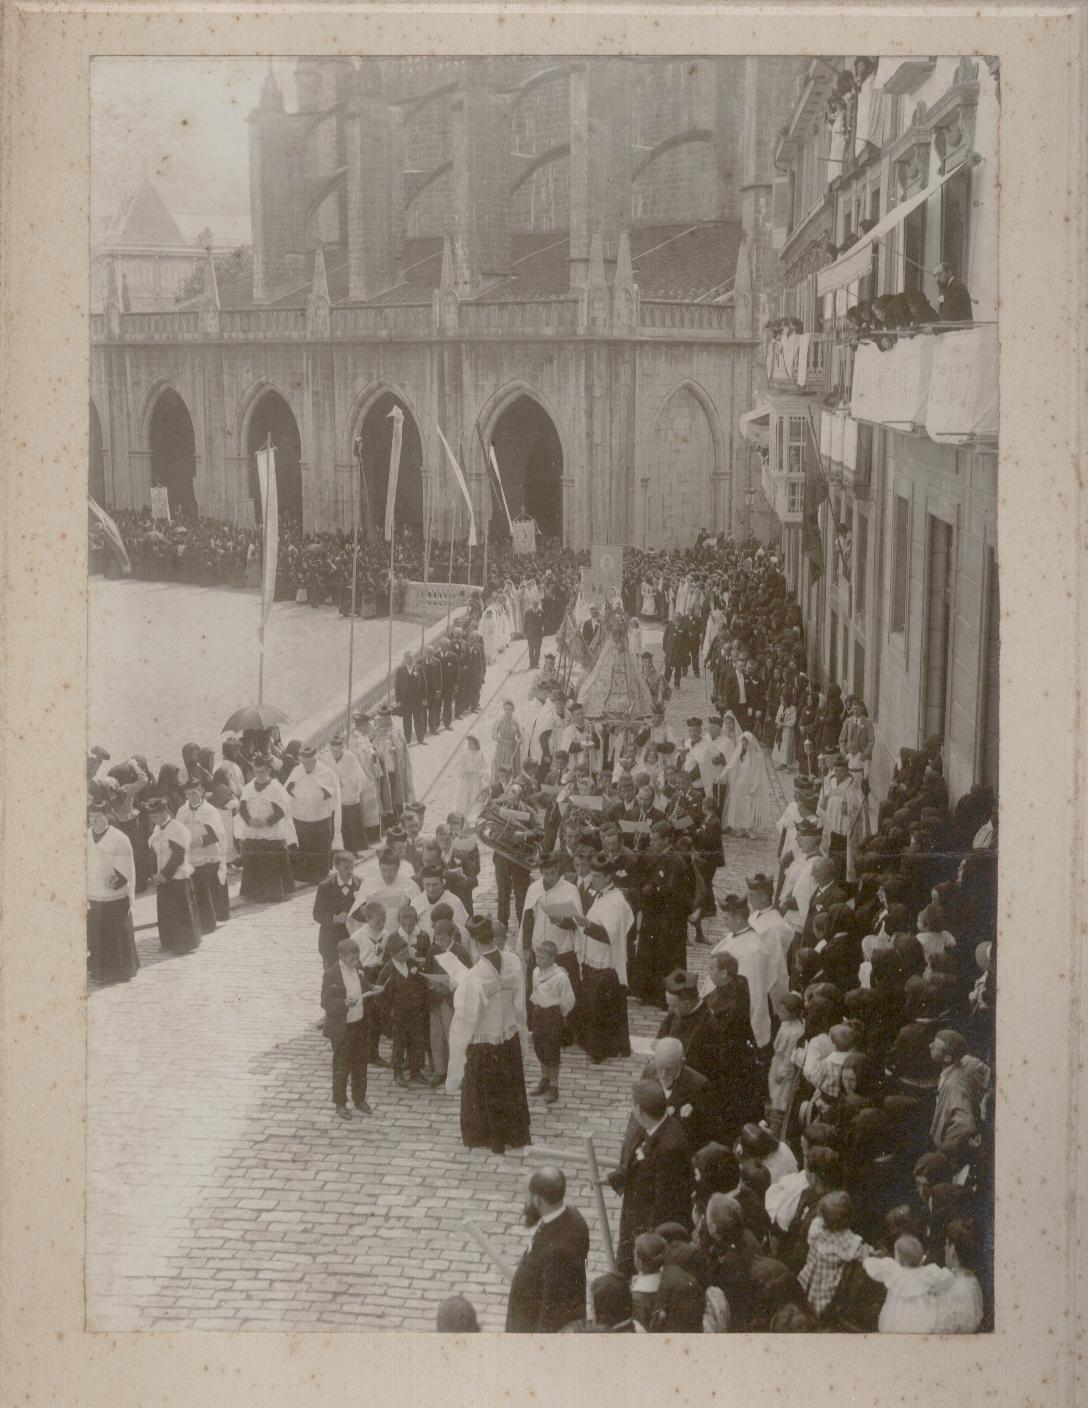 Lequeitio um 1900 religiöse Prozession